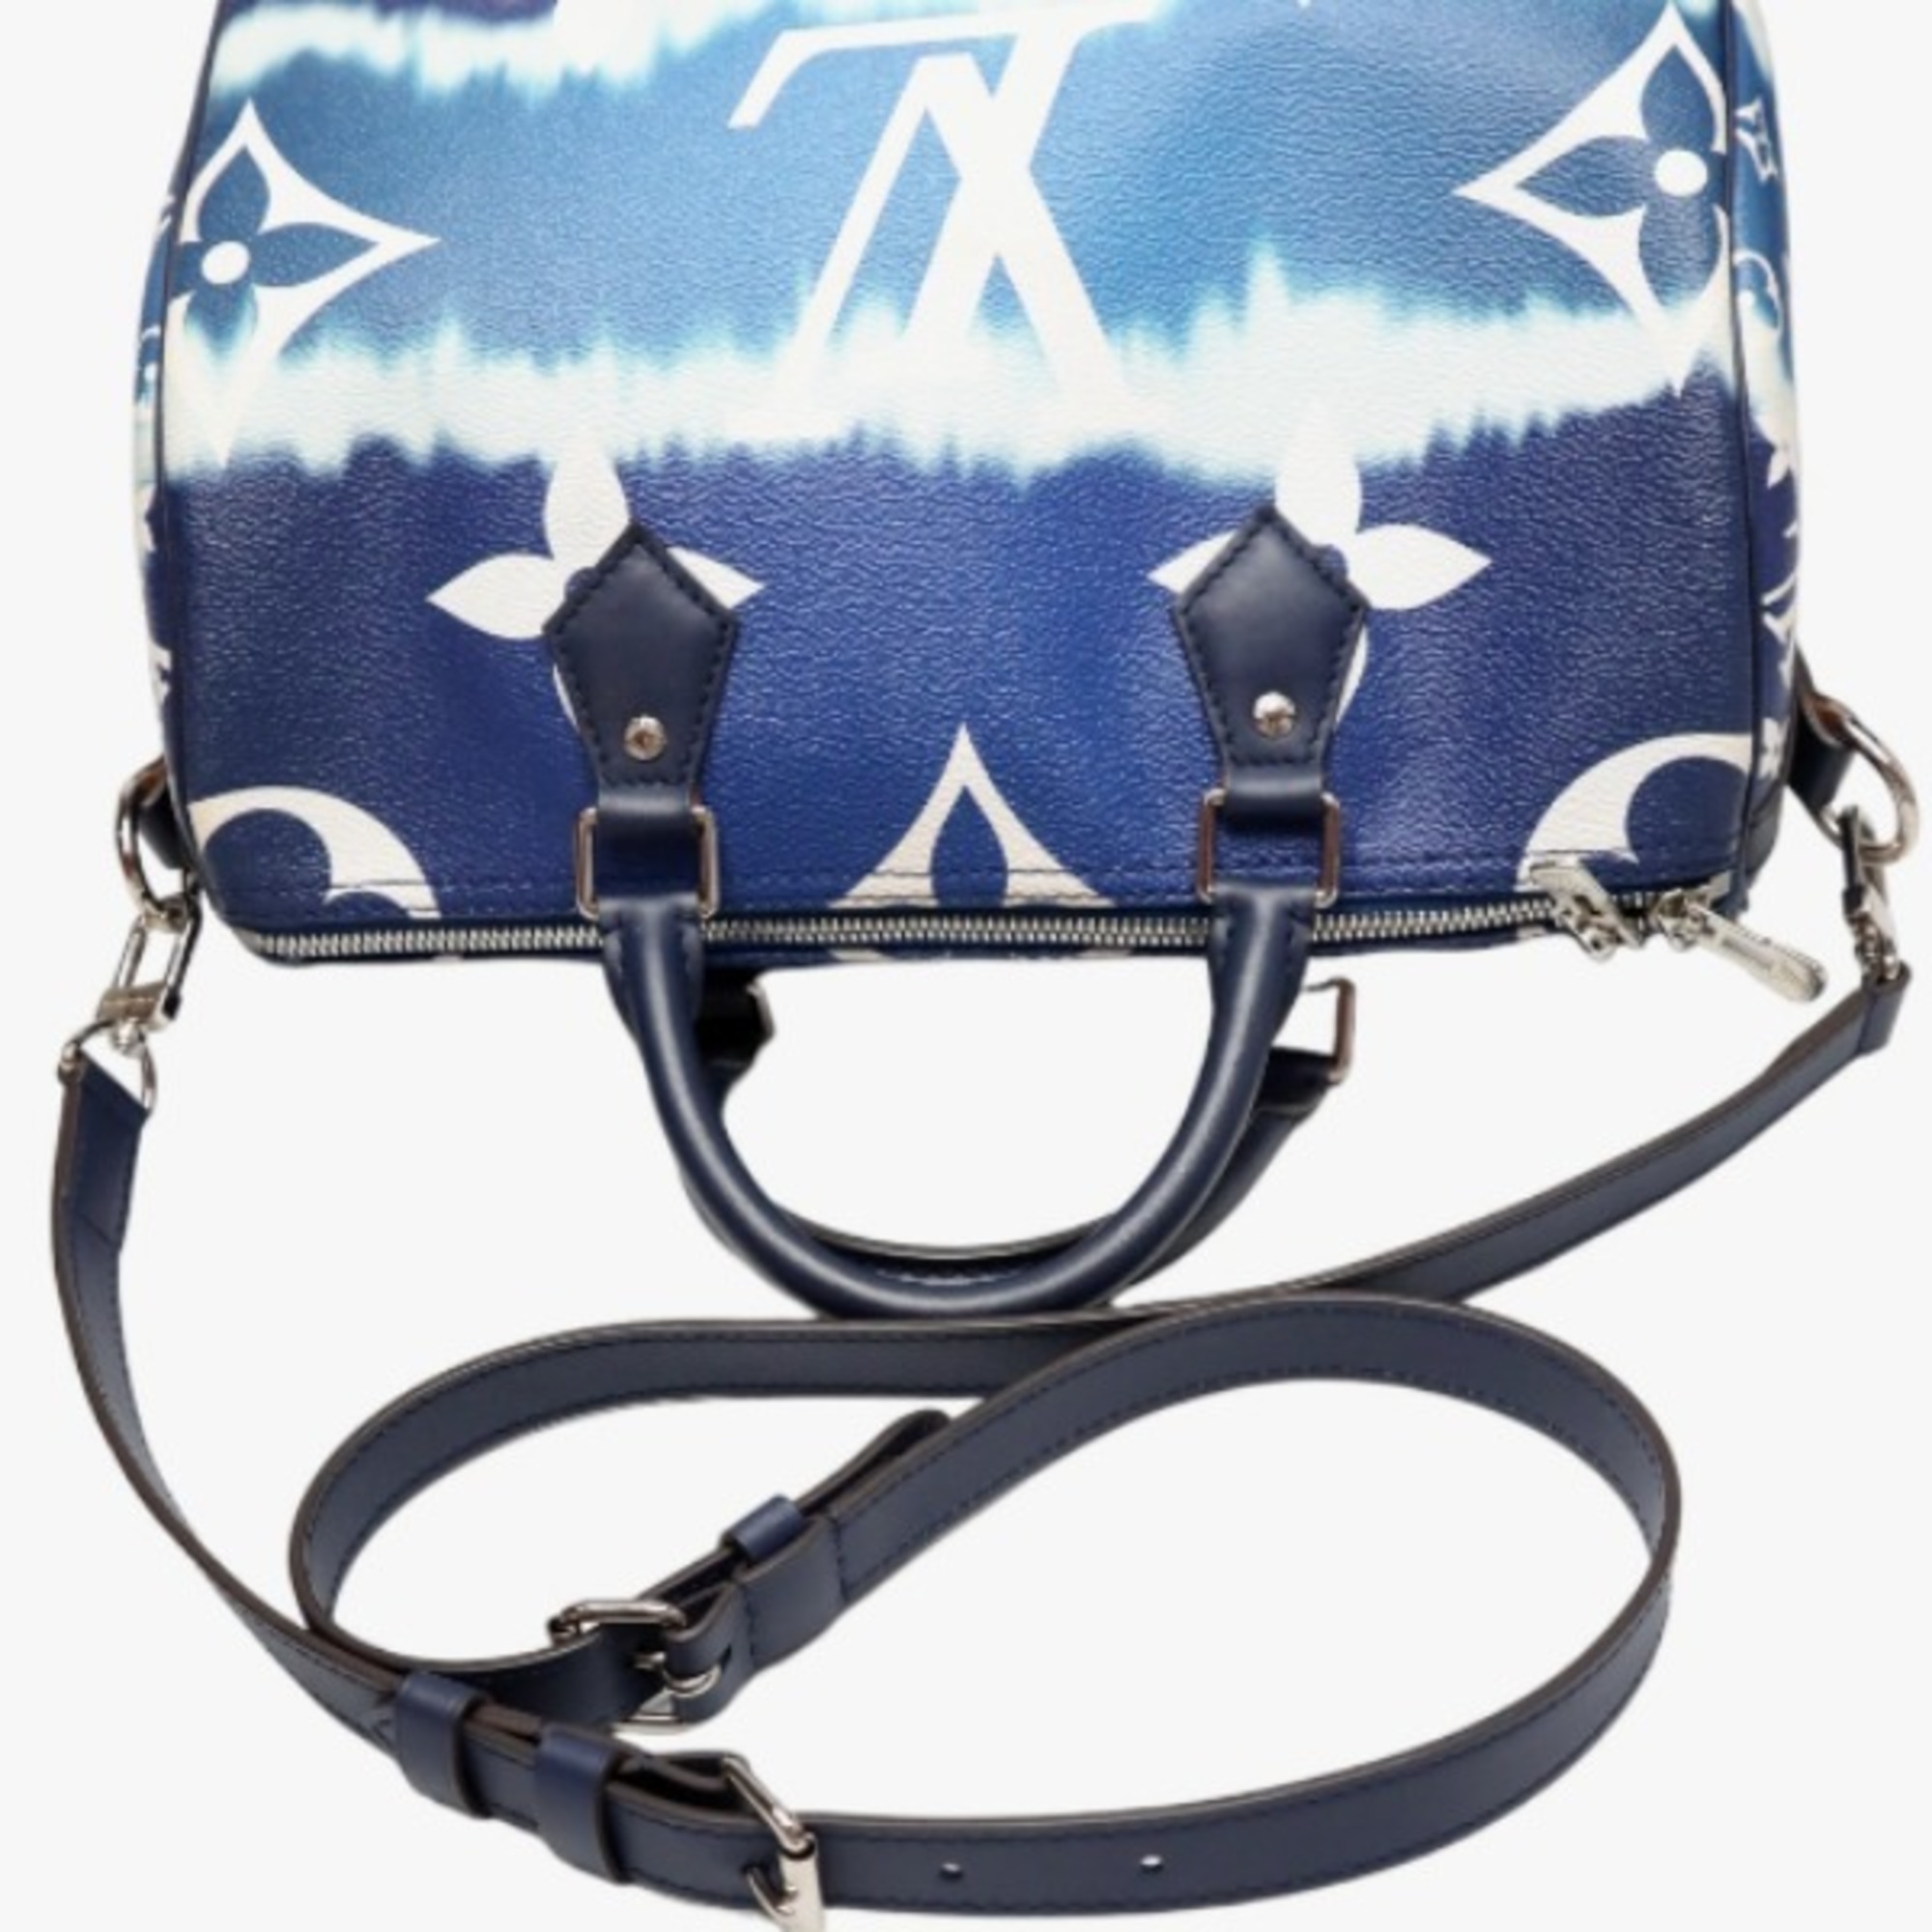 LOUIS VUITTON Bag Escale Speedy Bandouliere 30 M45146 Louis Vuitton Blue Shoulder LV